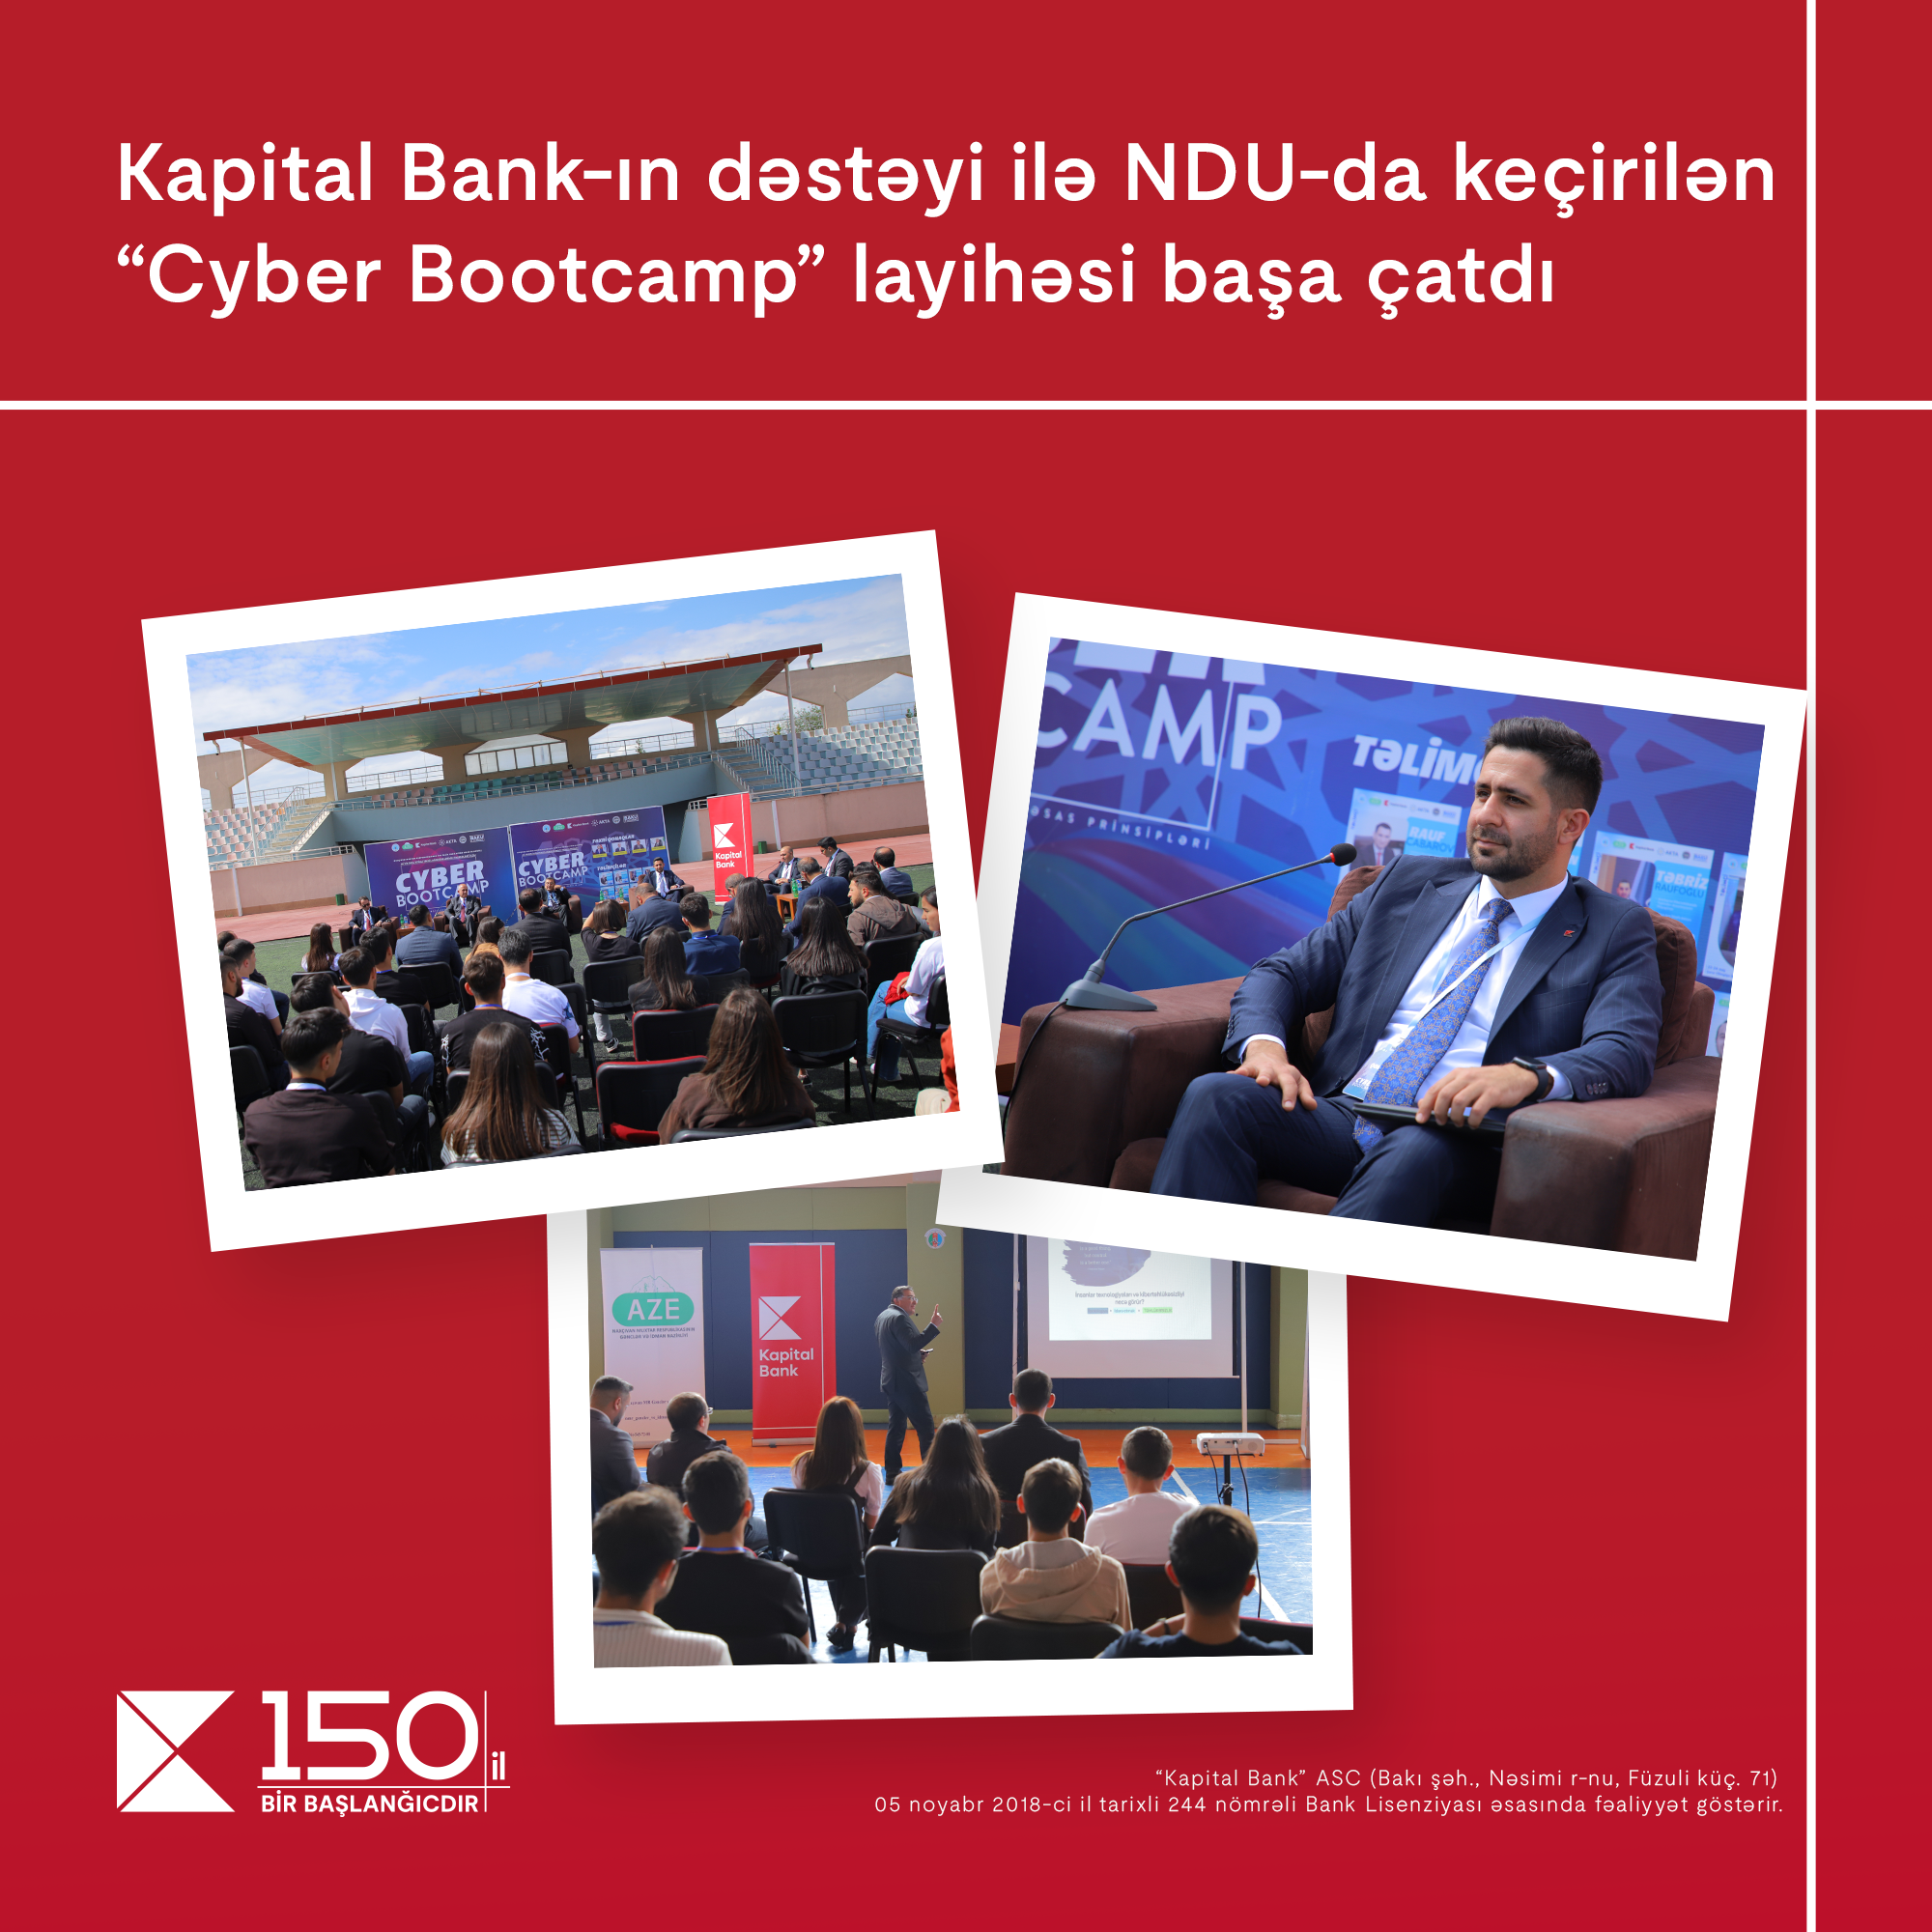 Kapital Bank-ın dəstəyi ilə NDU-da “Cyber Bootcamp” layihəsi başa çatdı